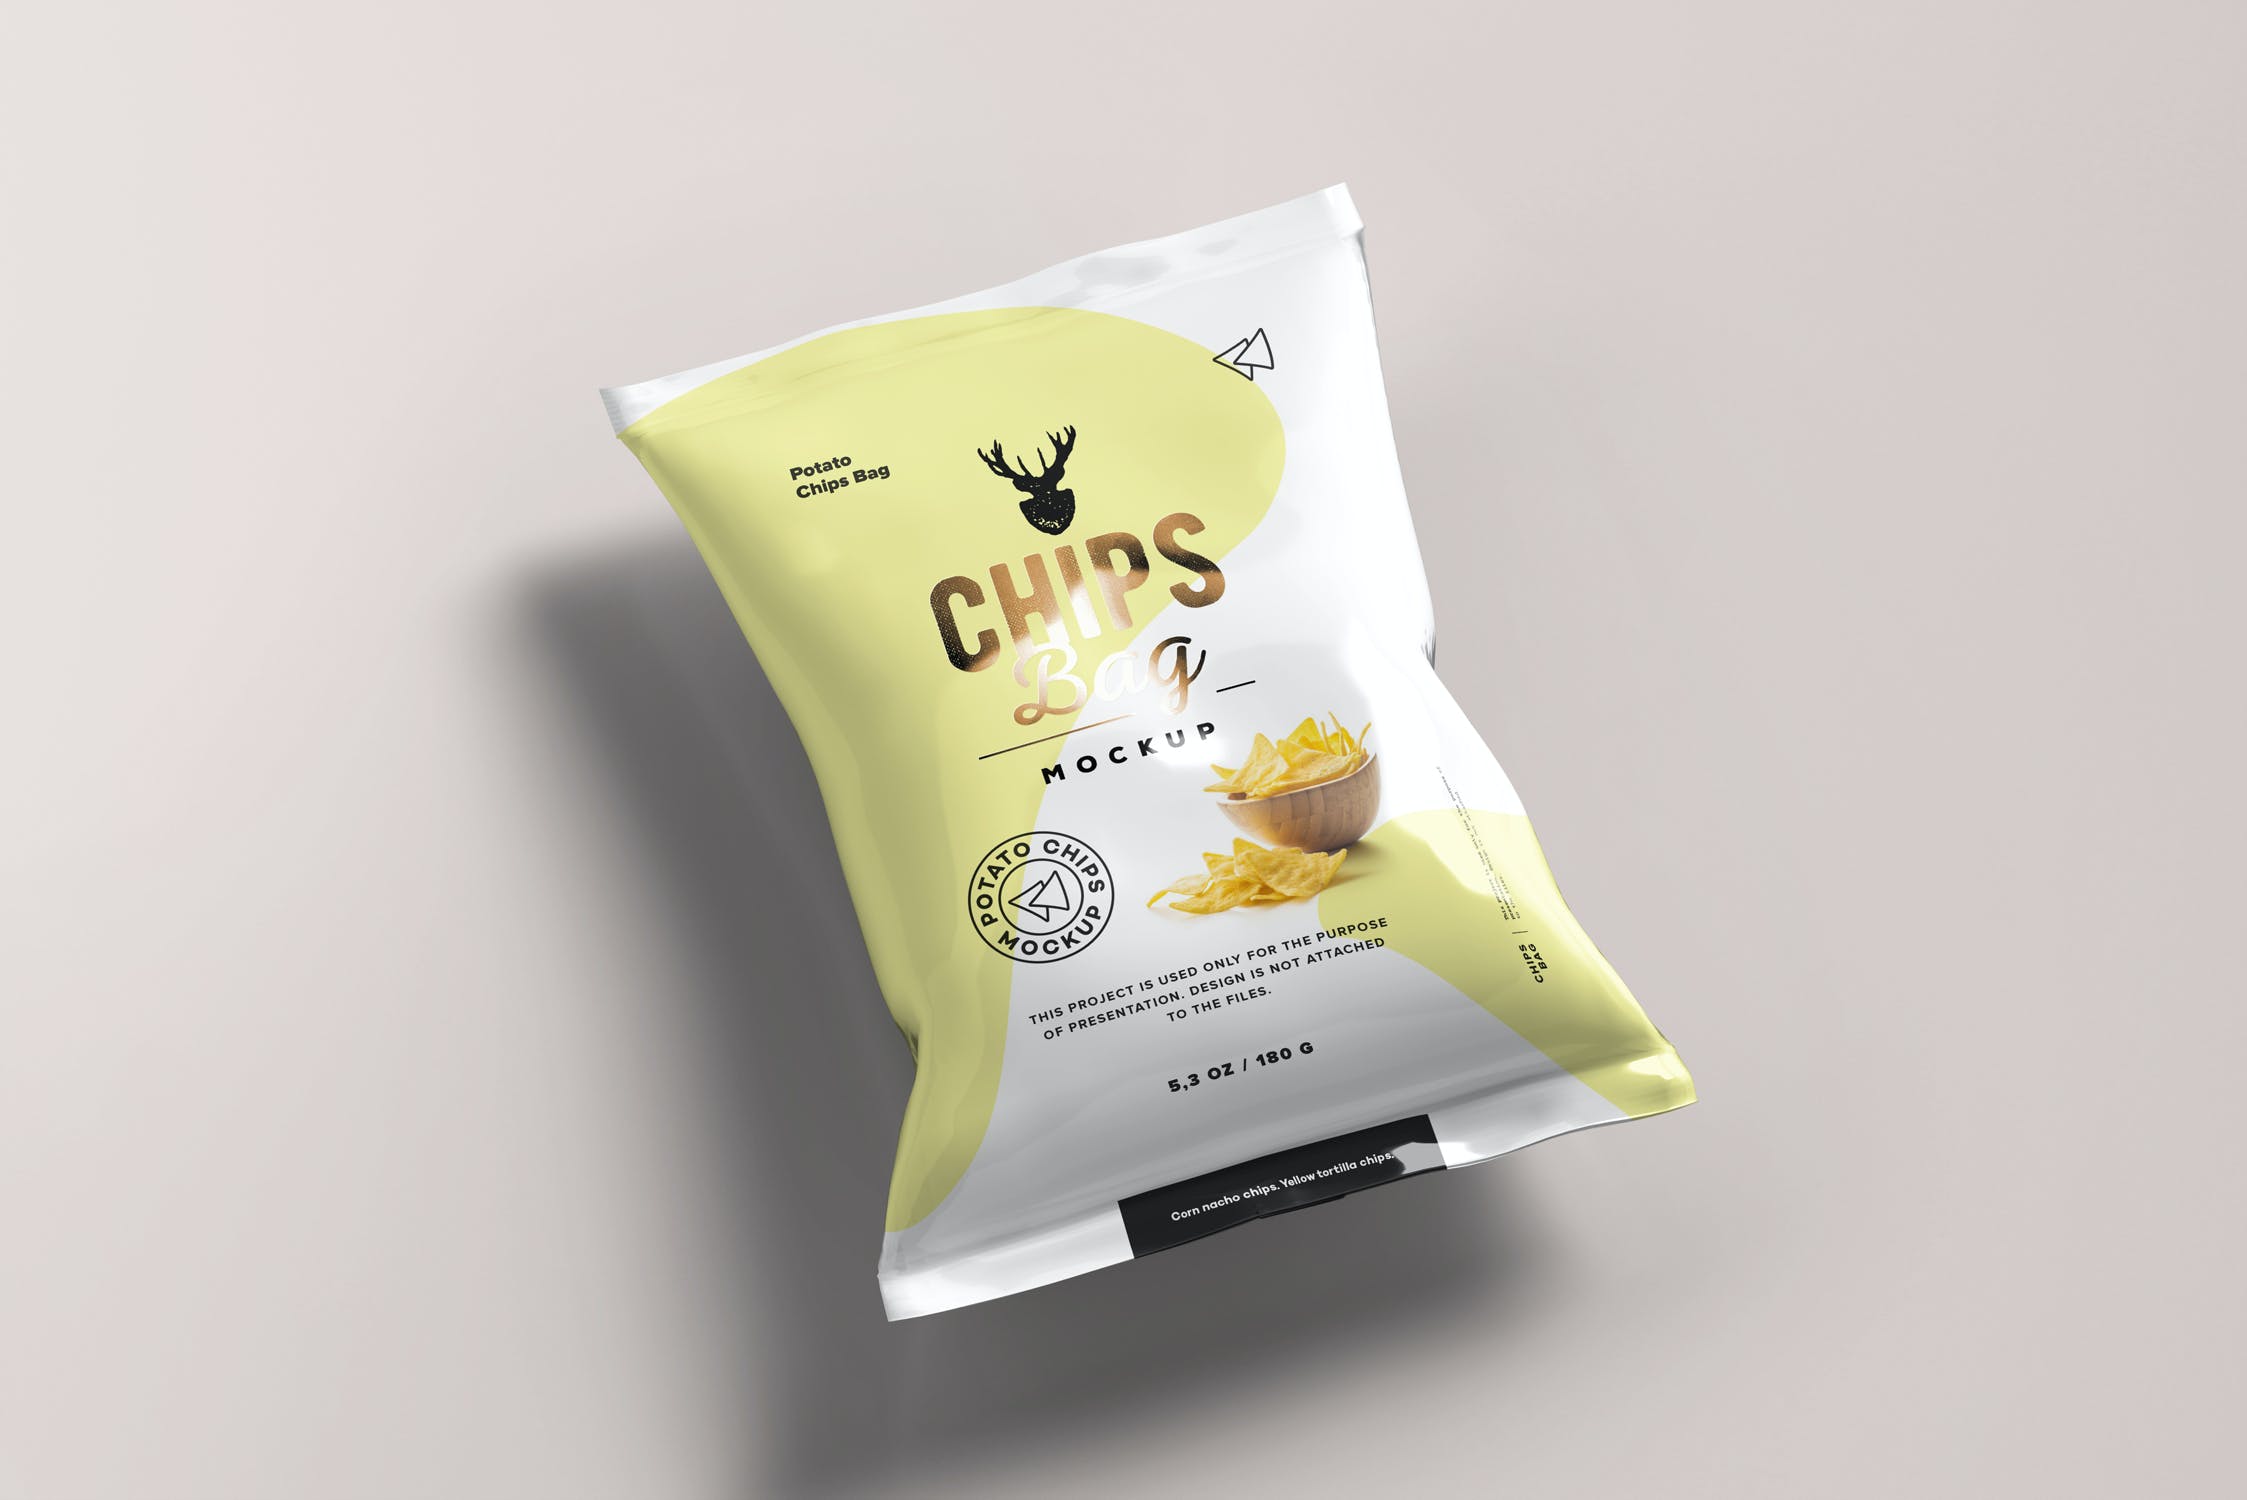 包装设计薯片零食袋样机 Food Bag Mock-up设计素材模板